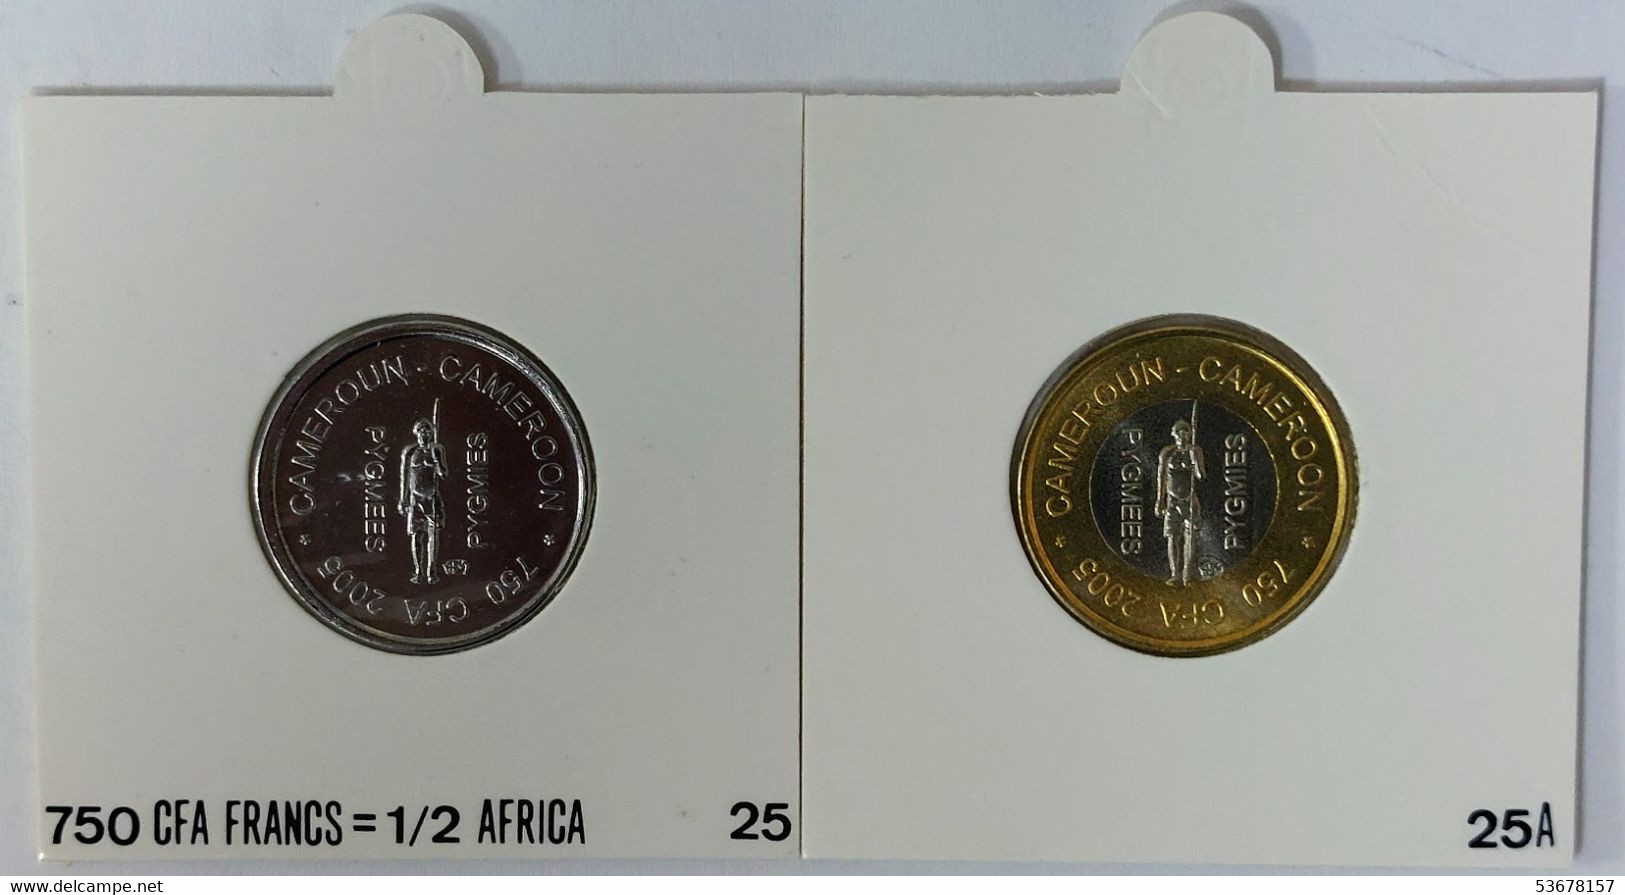 Cameroon - 750 CFA Francs-1/2 Africa (2 Coins Set) 2005, X# 25, 25a (Fantasy Coins) (1232) - Cameroun